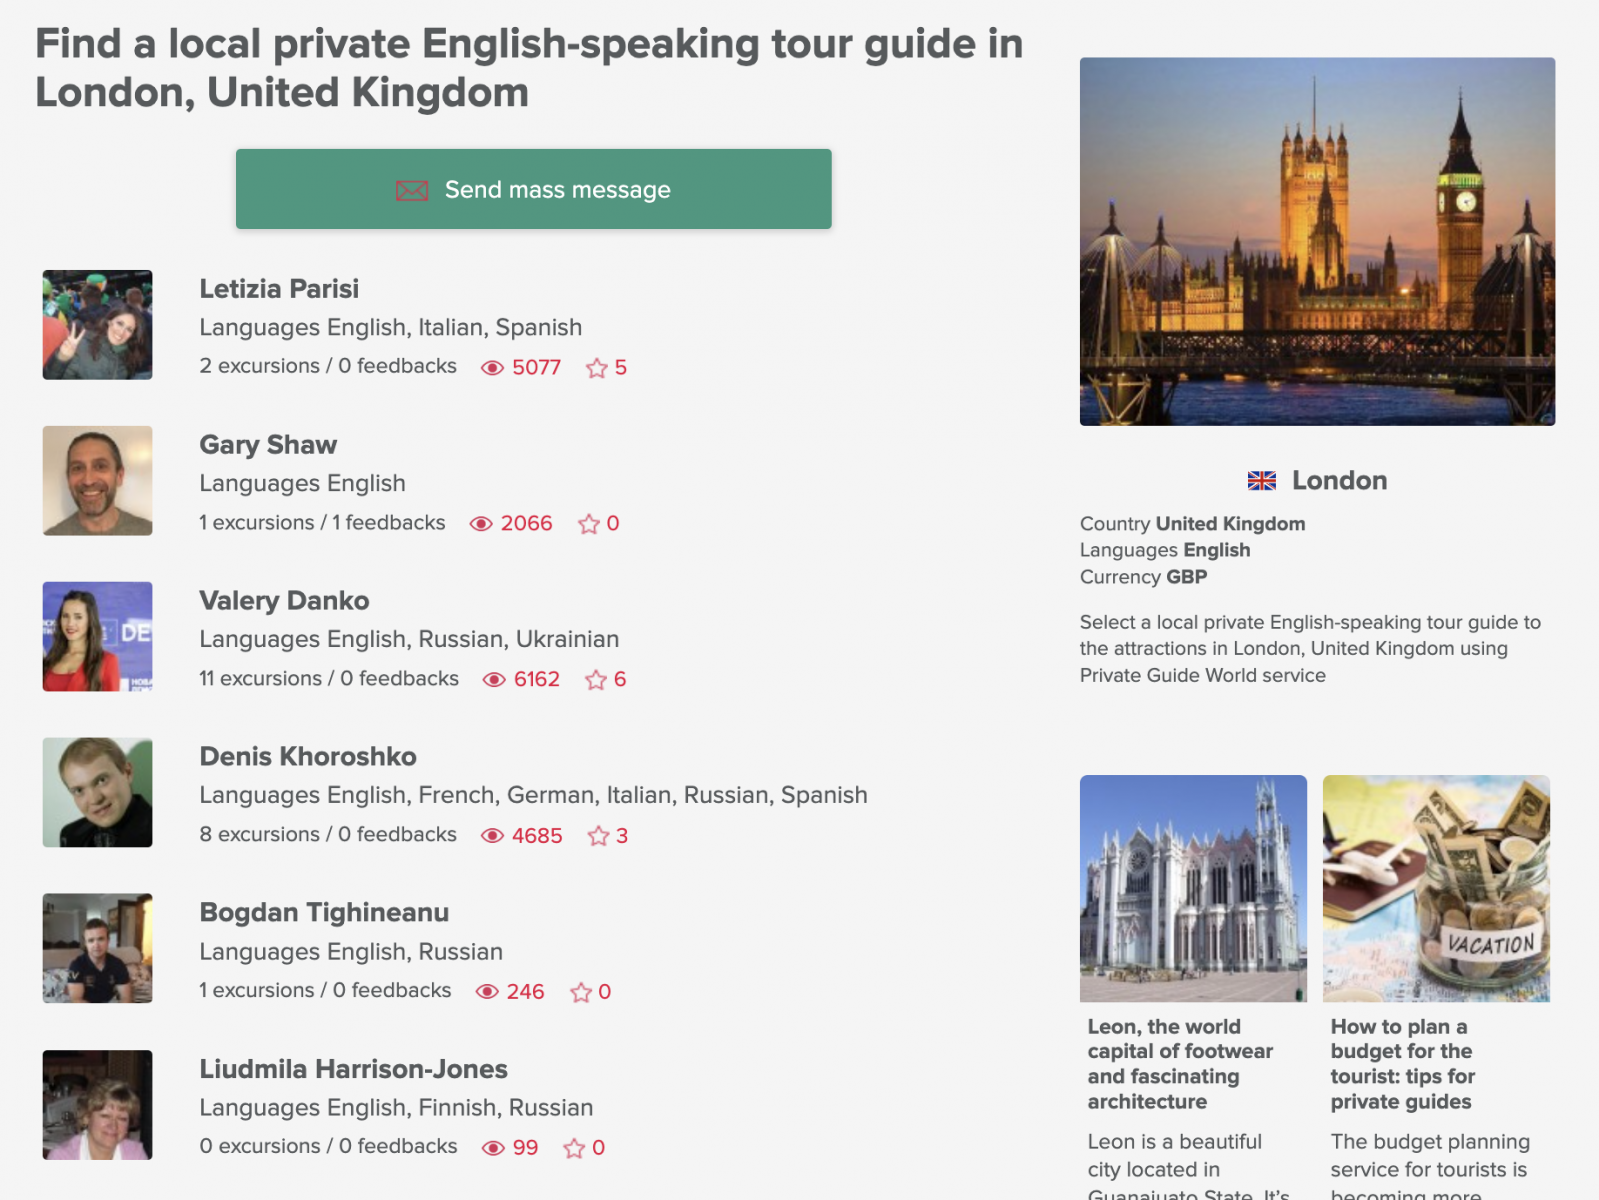 Guide turistiche private locali a Londra dalla piattaforma Private Guide World